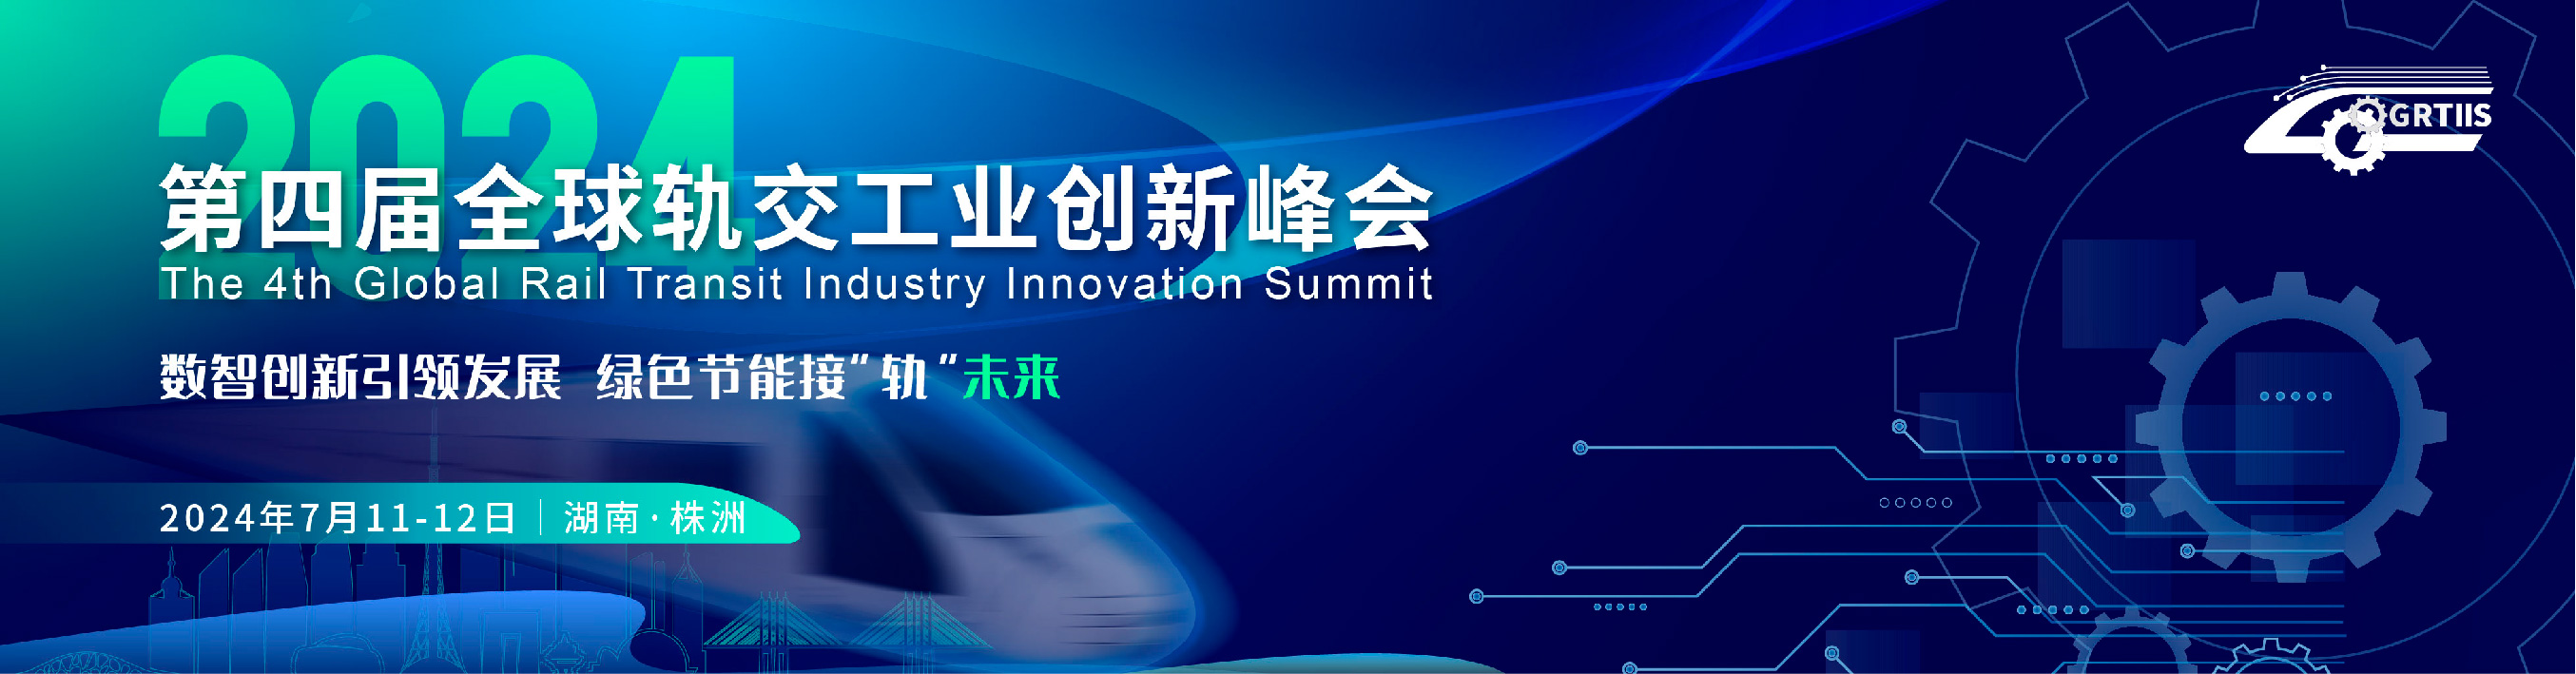 第四届全球轨交工业创新峰会